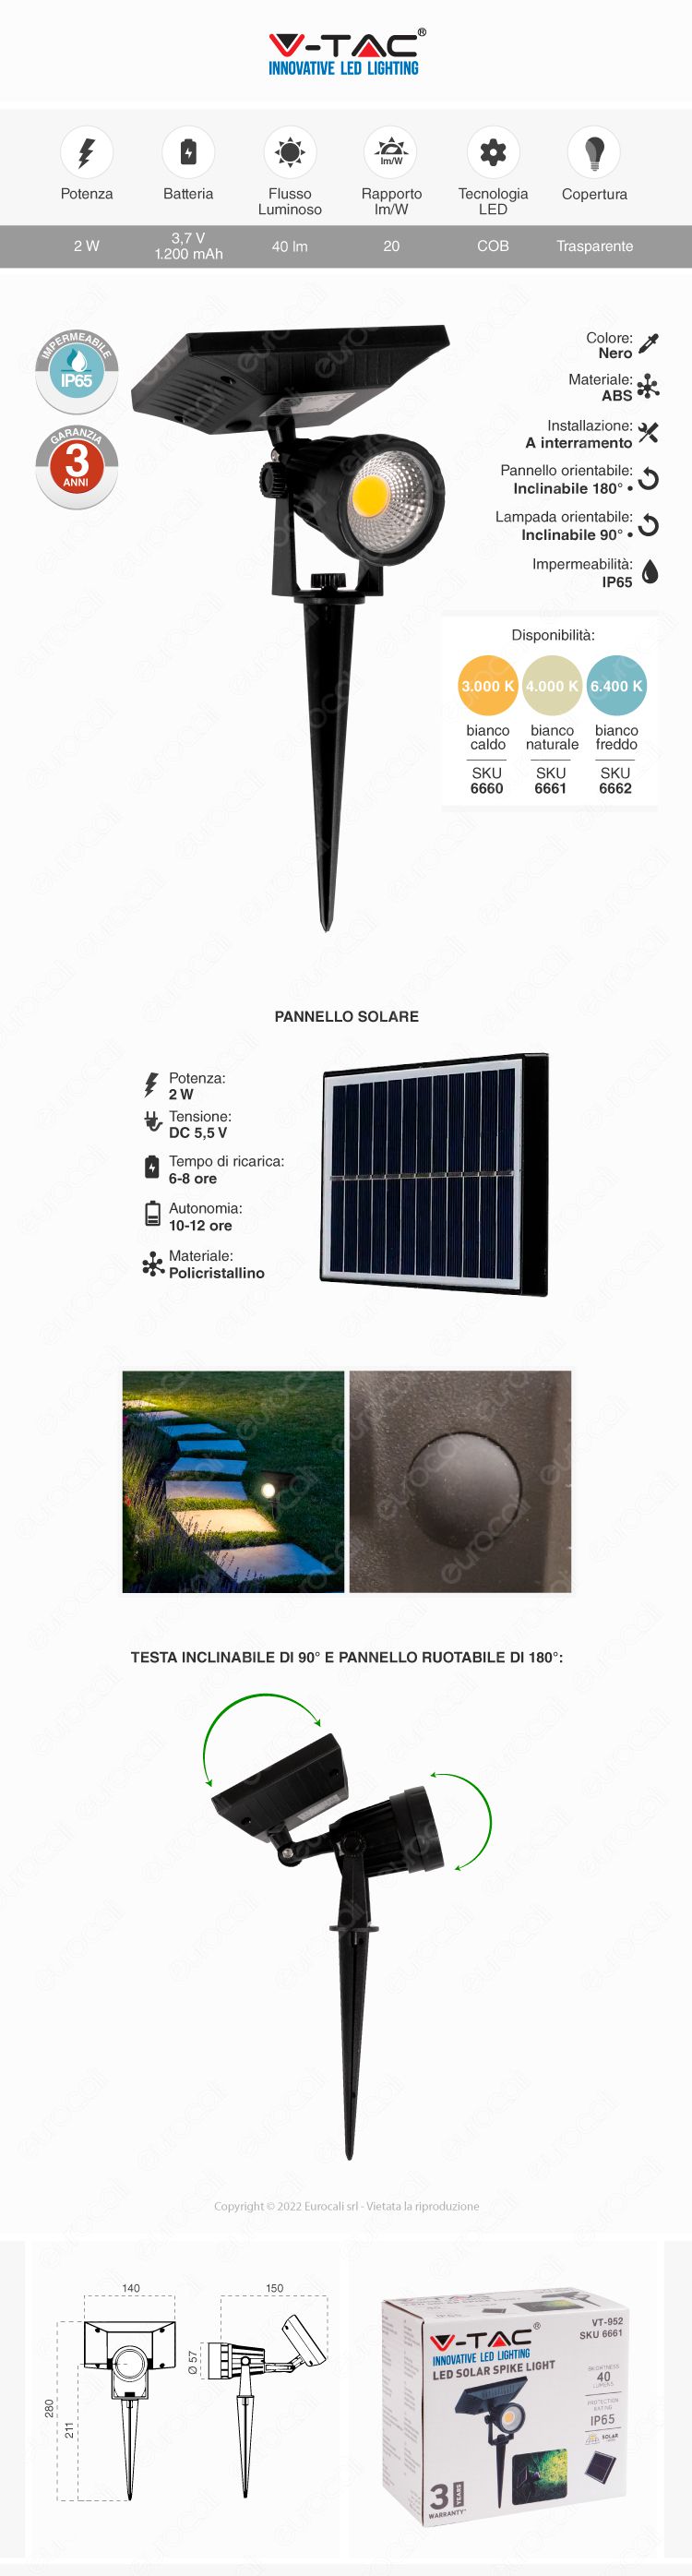 faretto giardino led cob v-tac pannello solare sensore crepuscolare 2w ip65 nero